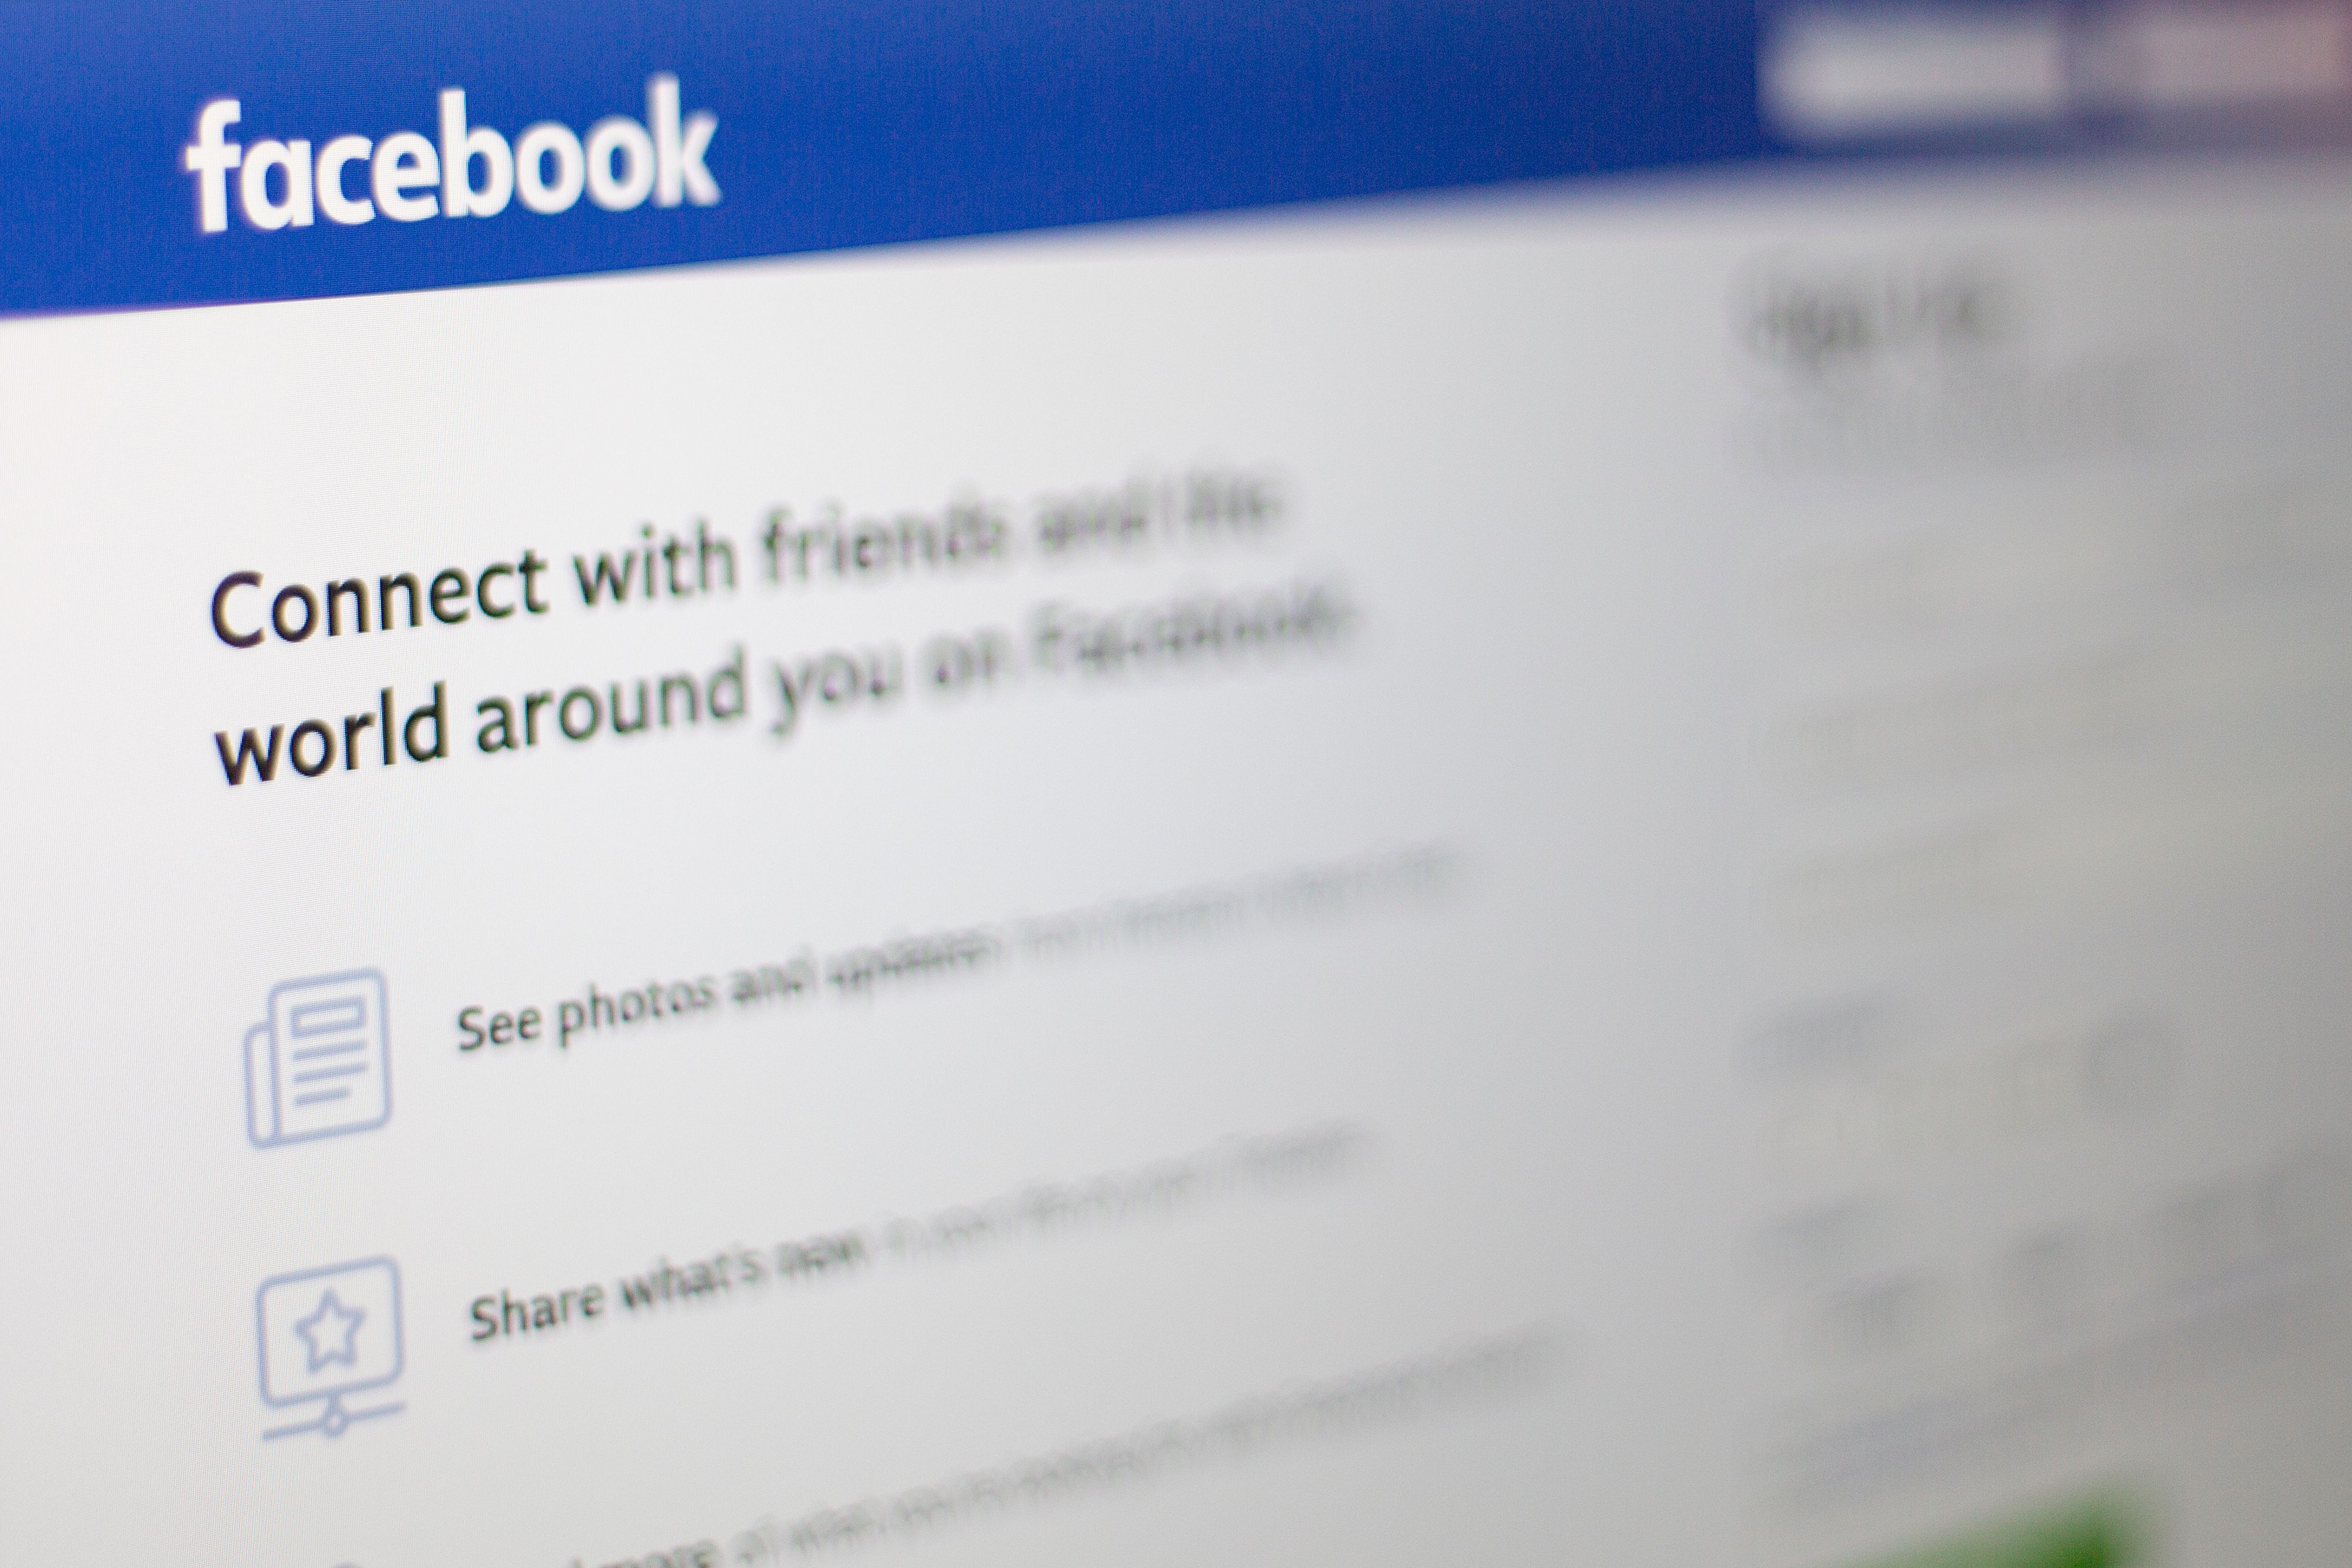 Facebook multiplica sus esfuerzos por recuperar la confianza y elimina cuentas falsas de la plataforma. (Foto Prensa Libre: AFP)